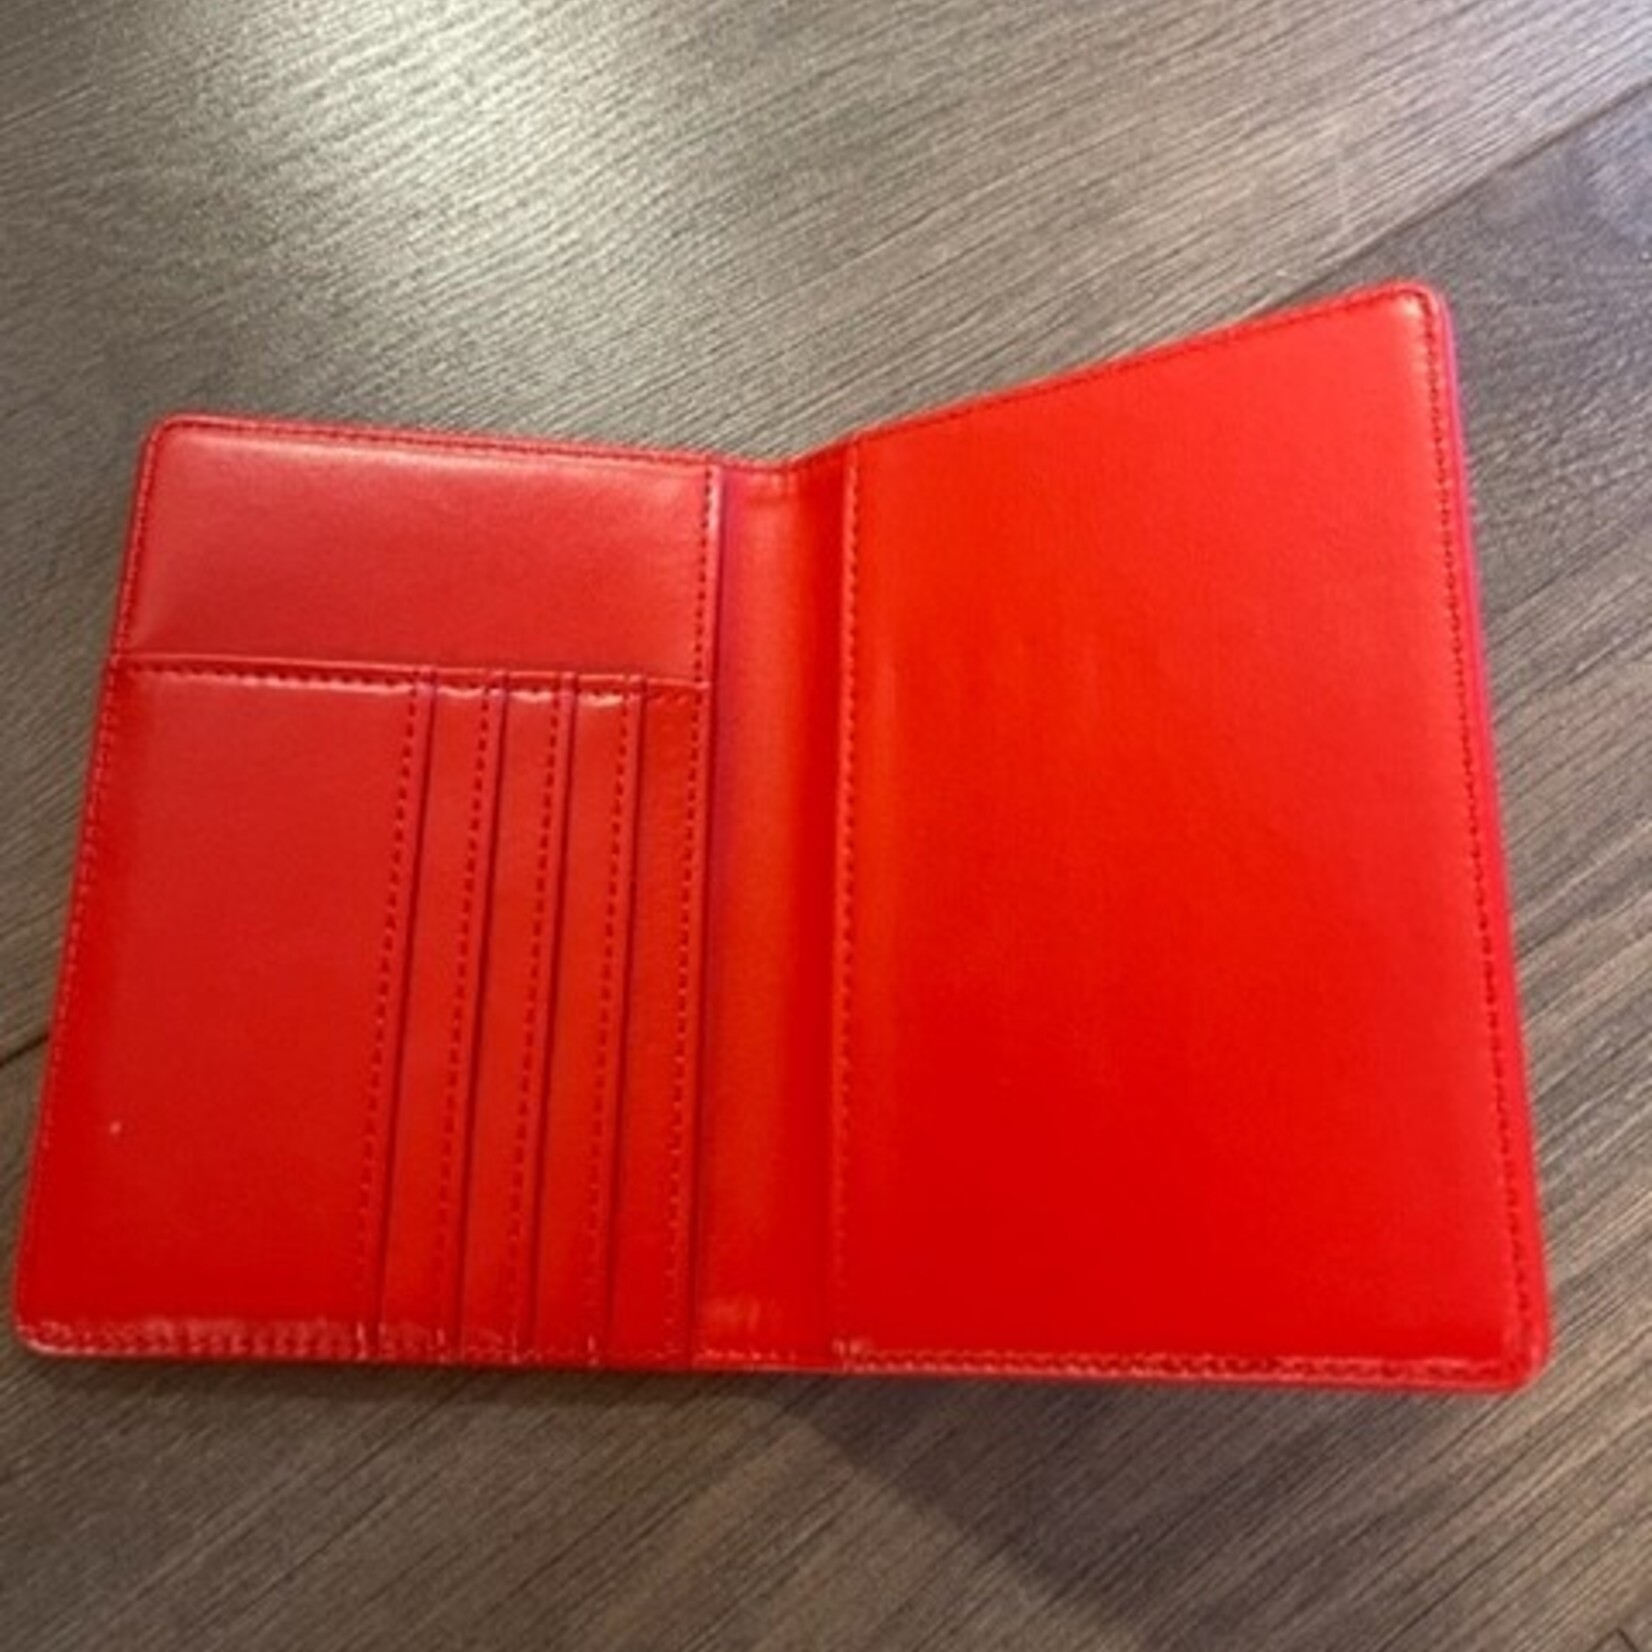 ΔΣΘ DST Red Leather Passport Cover